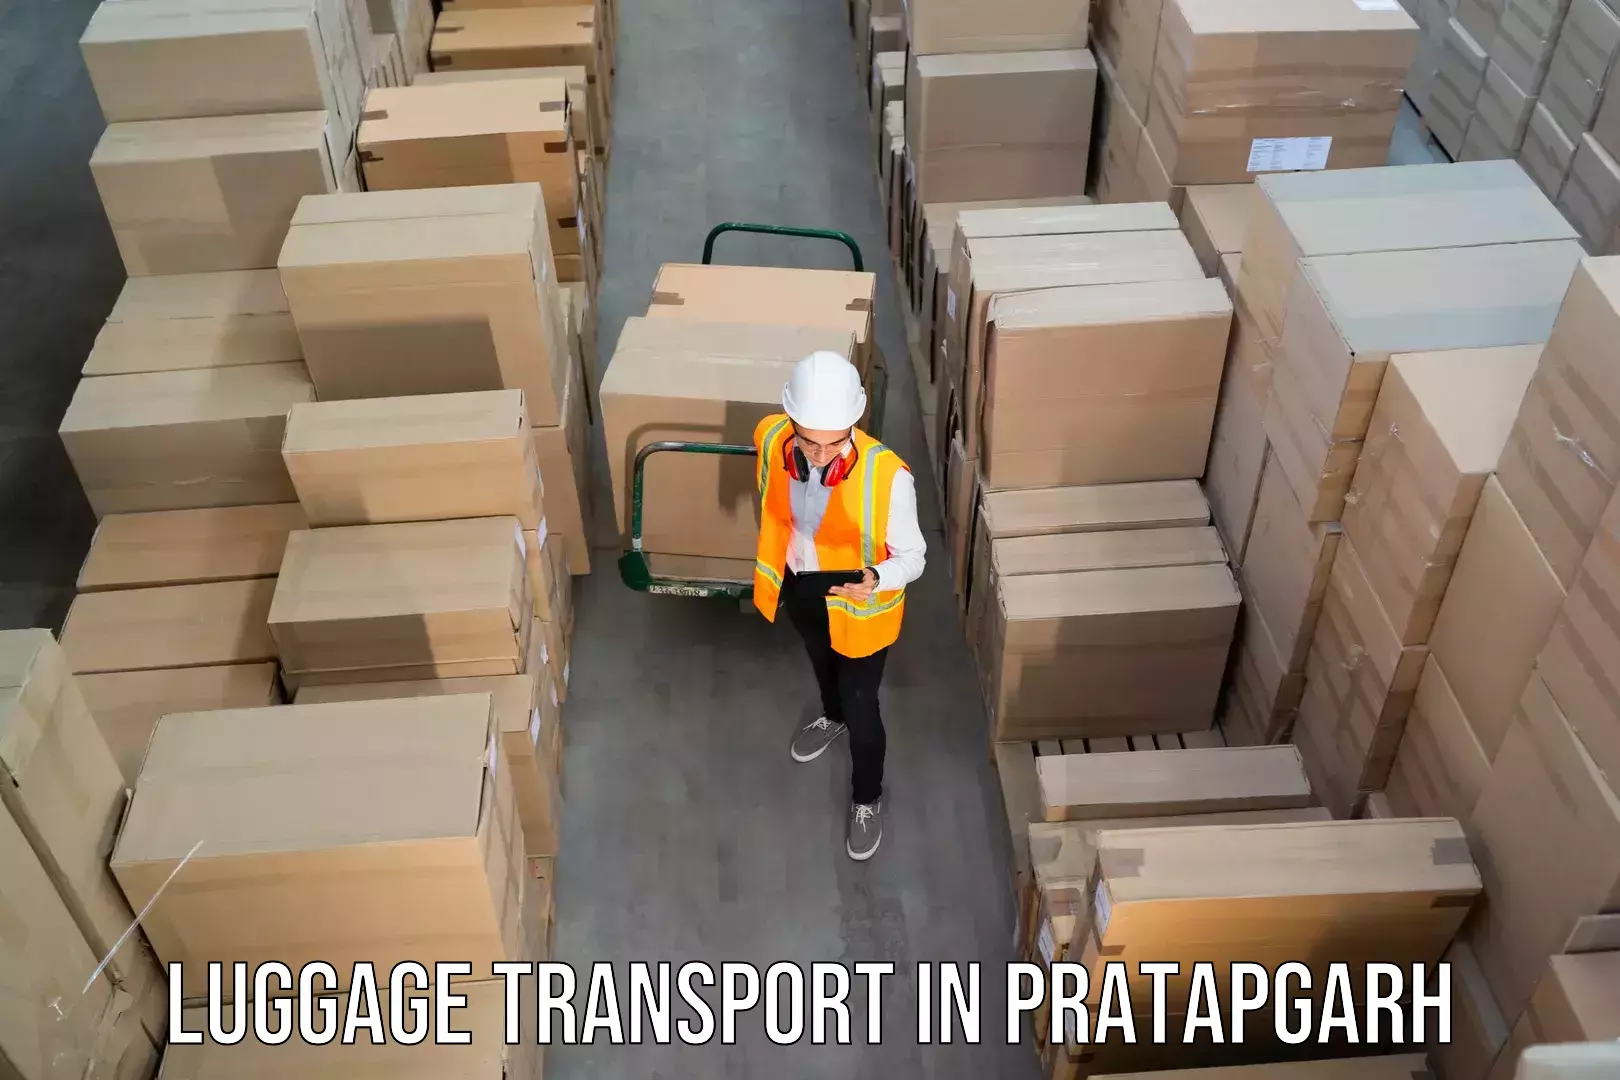 Rural baggage transport in Pratapgarh